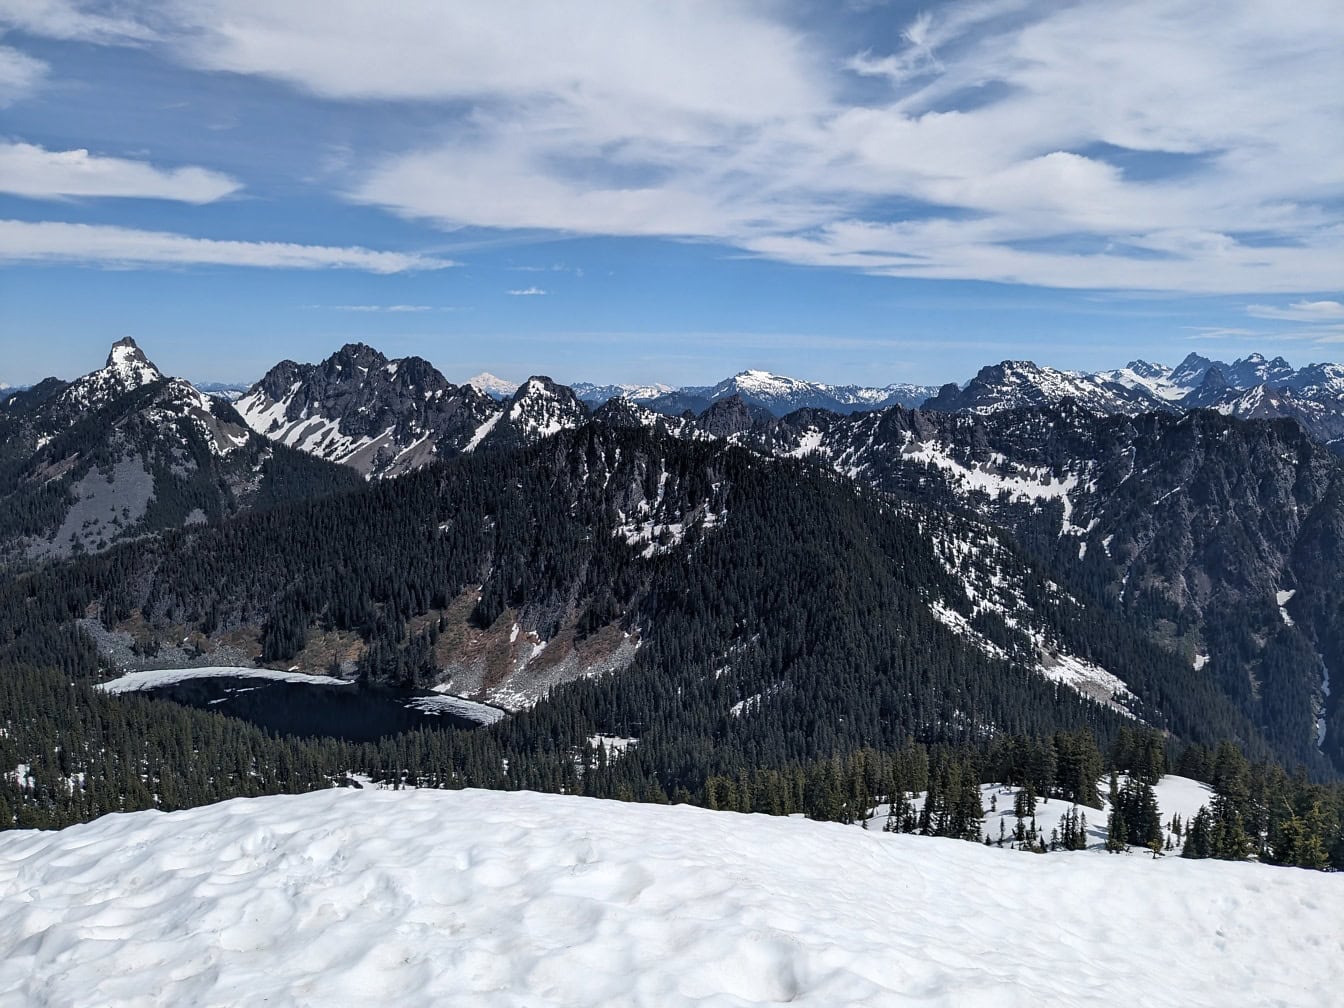 Udsigt over Granit bjerg i Washington med snedækkede bjergtoppe og med træer og en sø